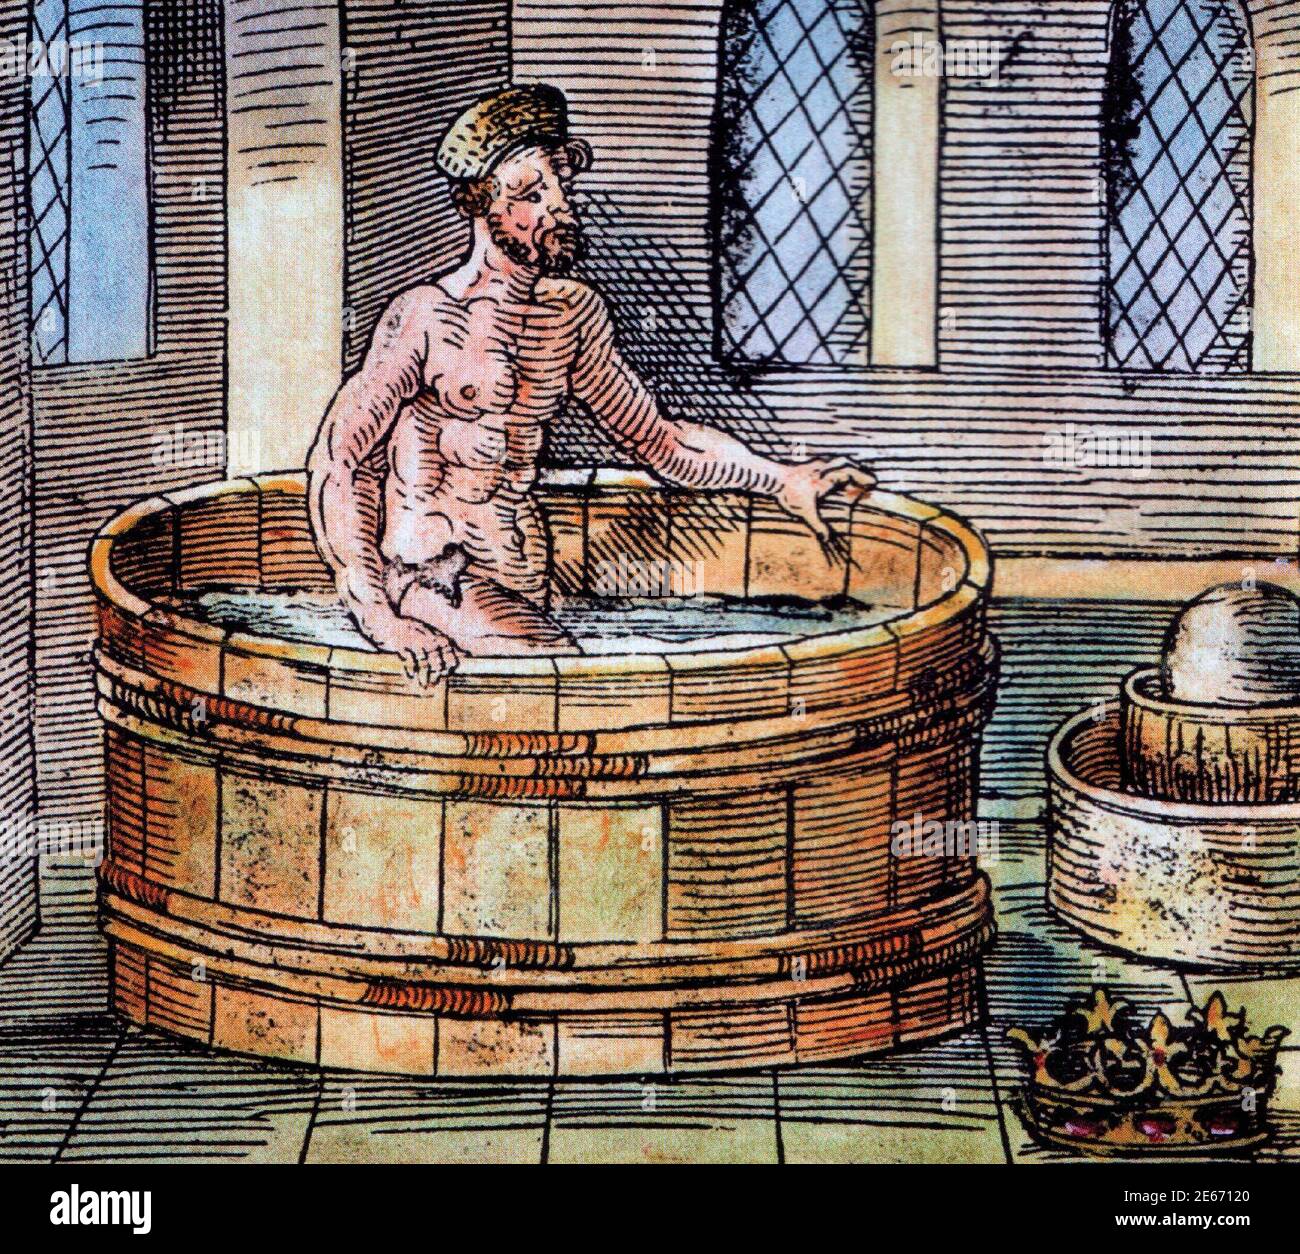 Il filosofo greco Archimede nel suo bagno - scultura del XVI secolo. Foto Stock